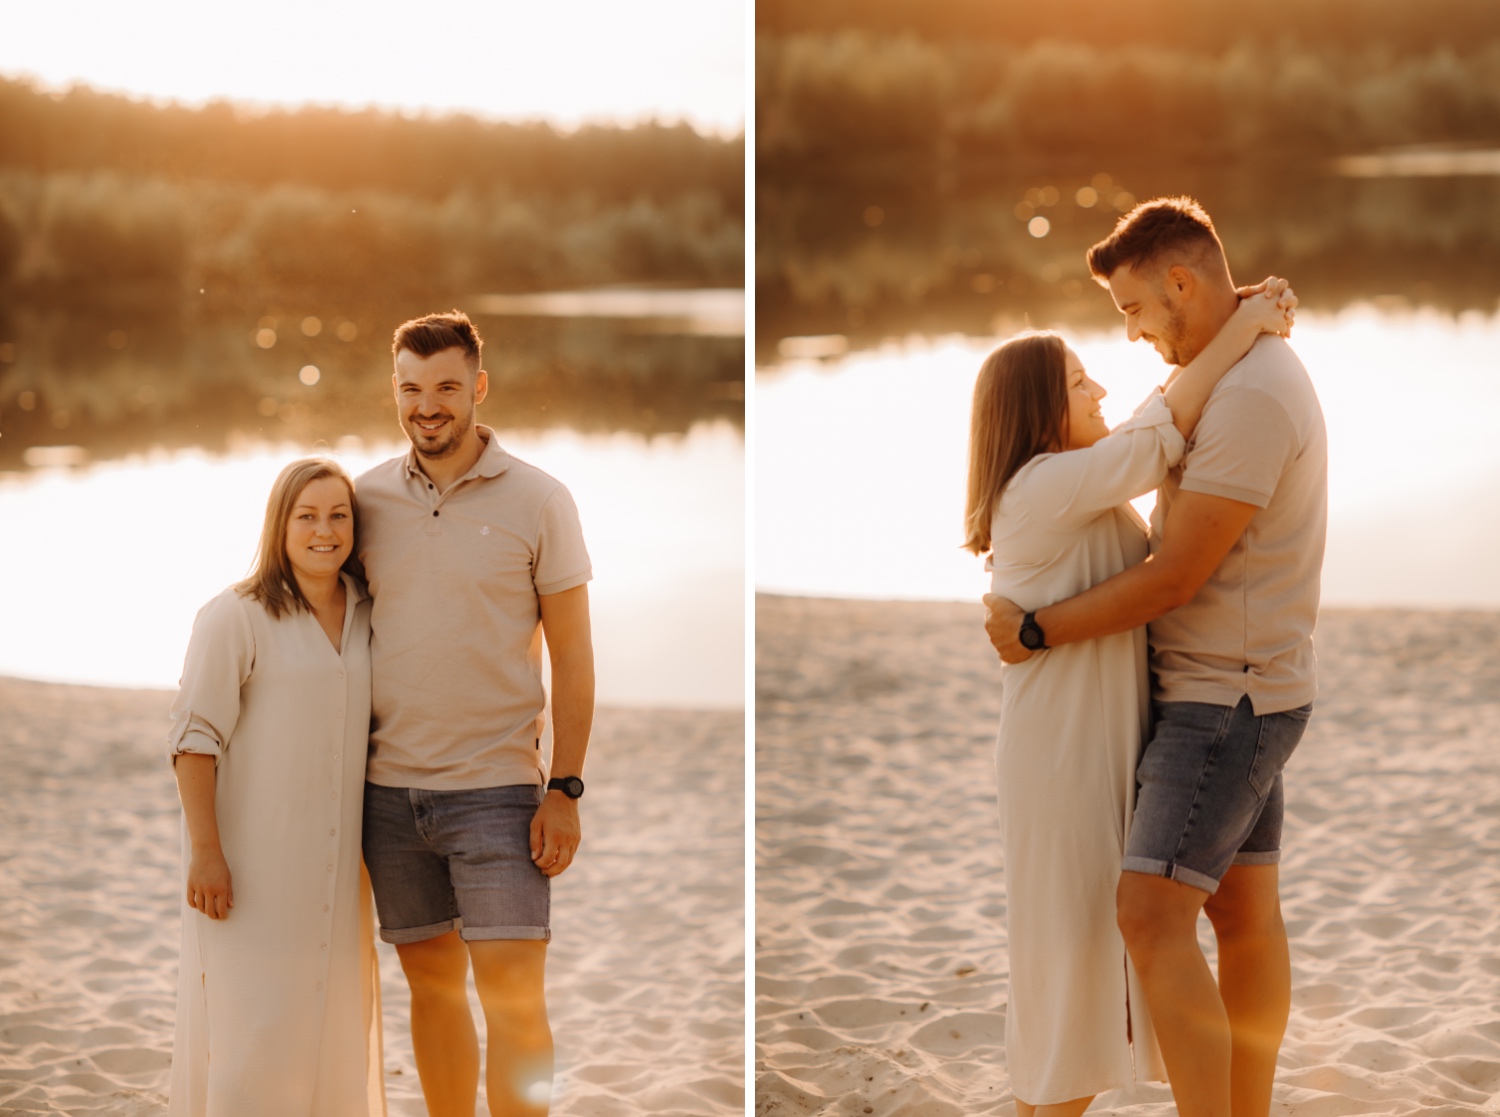 gezinsfotograaf - koppel kijkt elkaar in de ogen tijdens zonsondergang